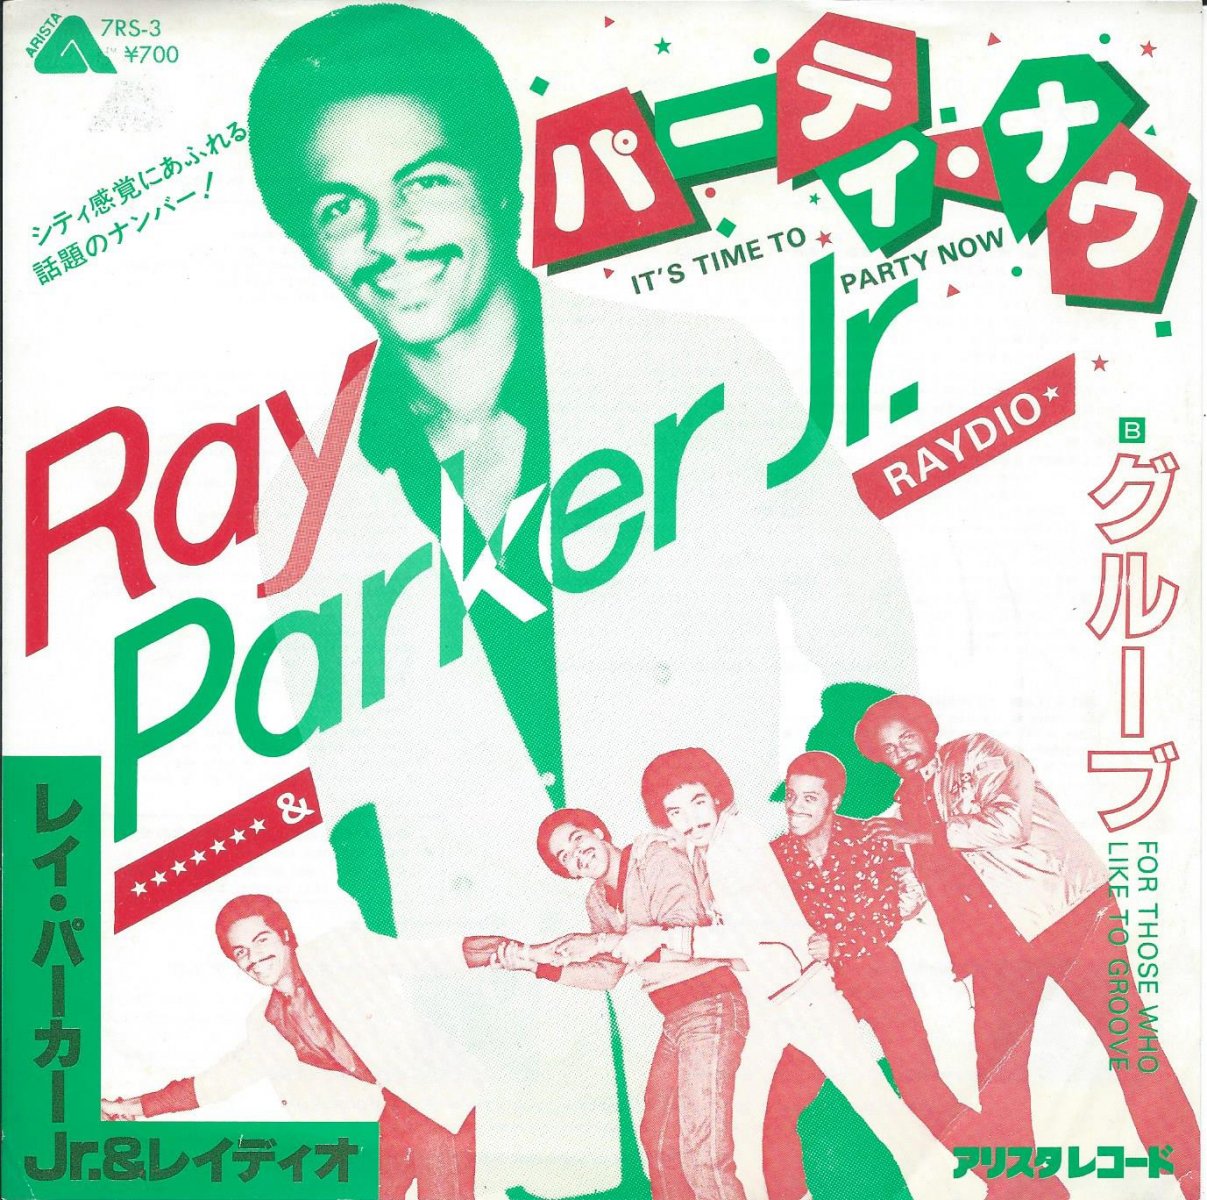 レイ・パーカーJr.& レイディオ RAY PARKER JR.AND RAYDIO / パーティ・ナウ IT'S TIME TO PARTY NOW (7